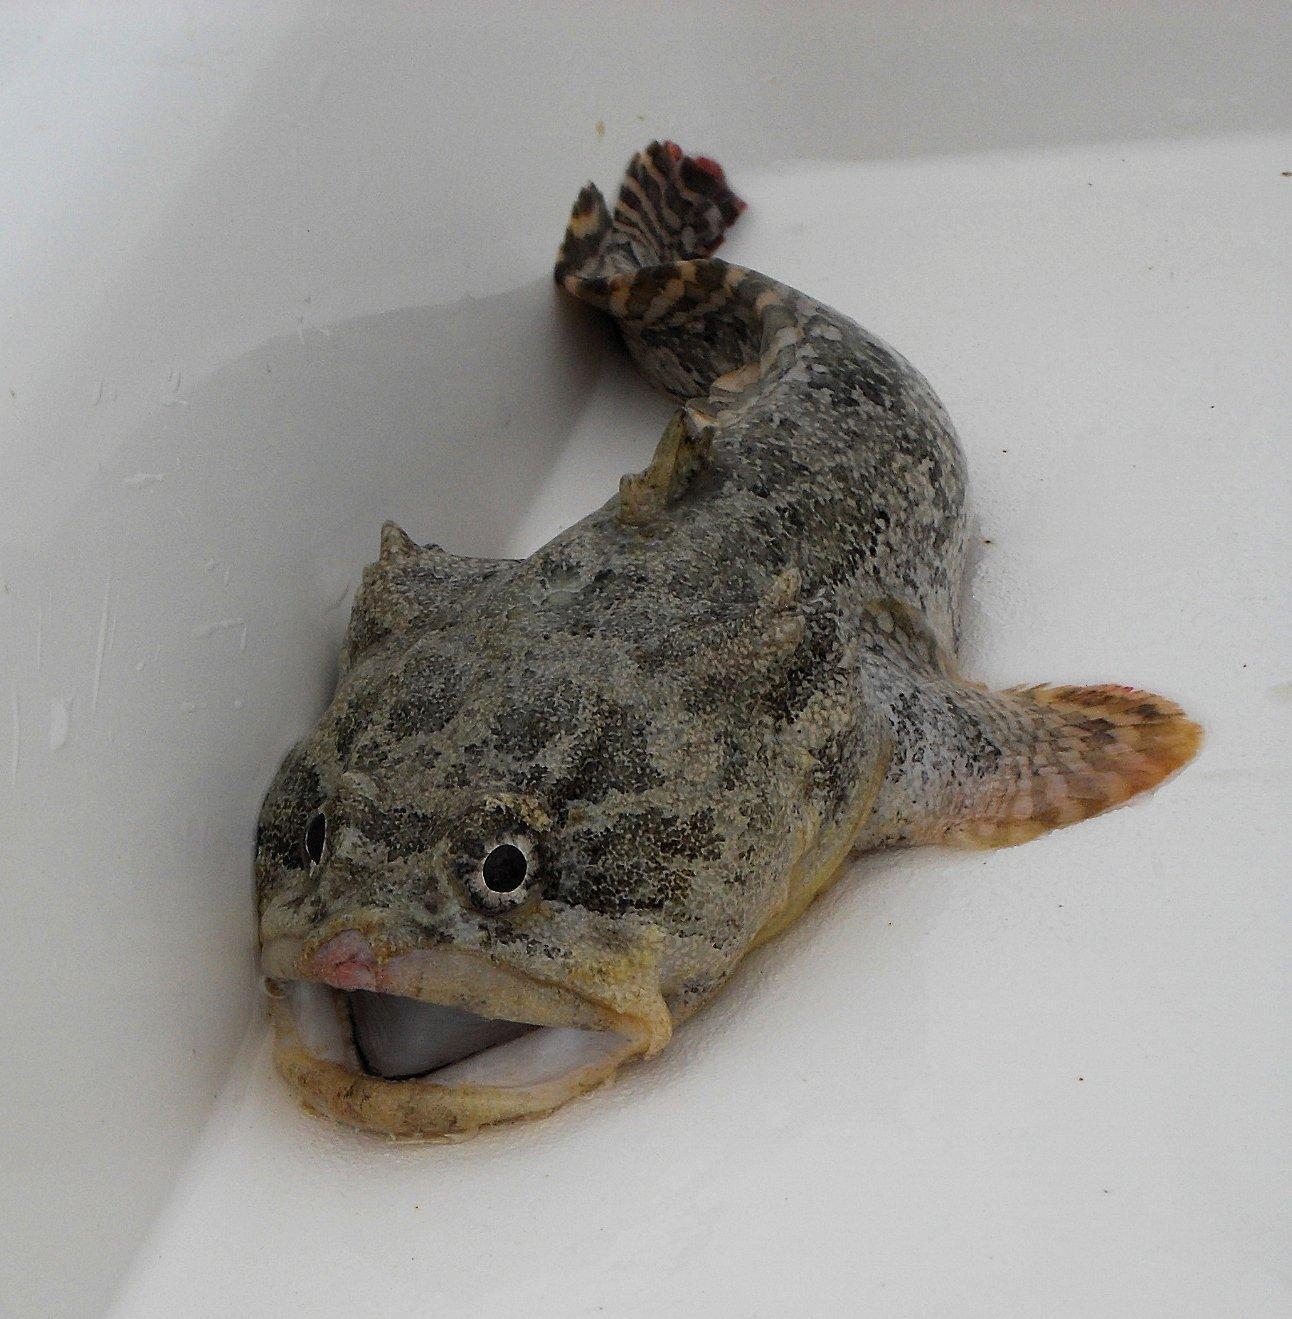 Infestation of poisonous toadfish concerns locals in Turkish resort town  Bodrum - Türkiye News